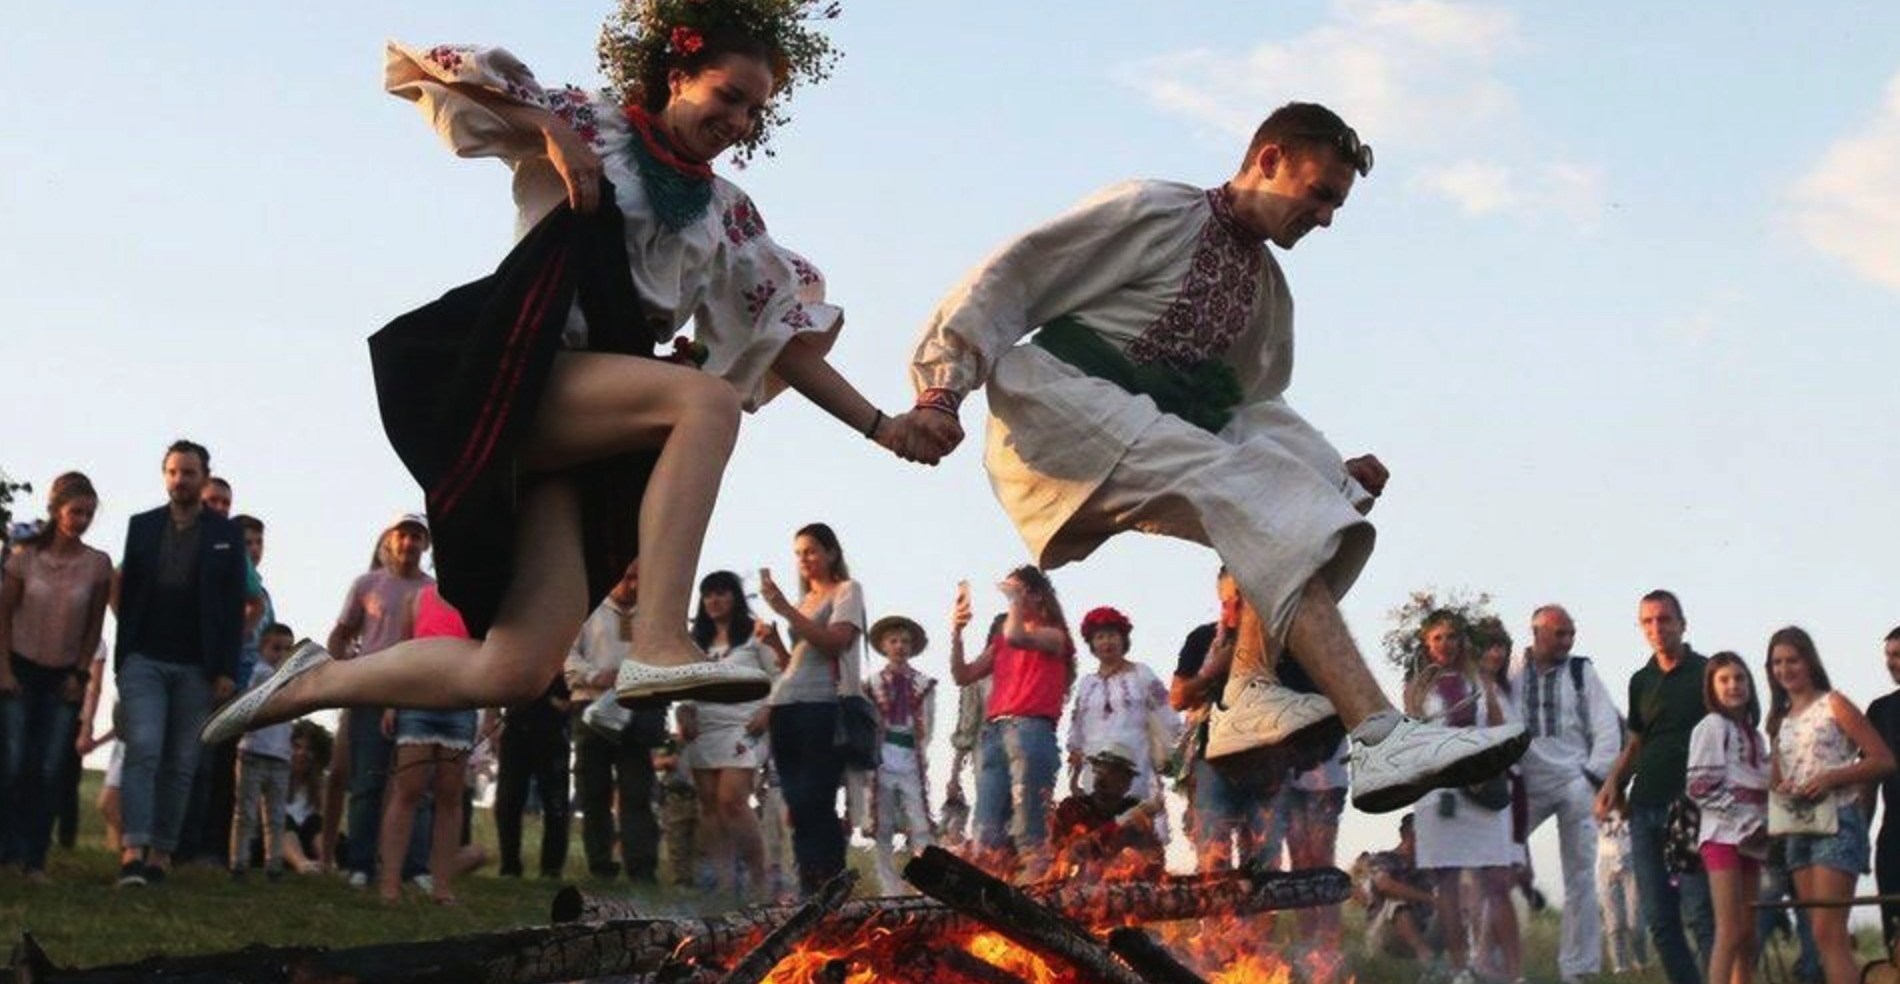 Українські фестивалі влітку: дати й локації